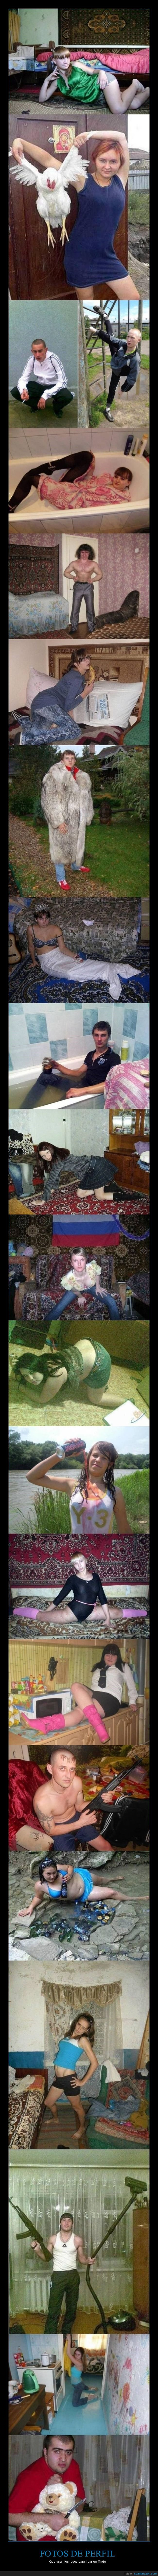 fotos de perfil,rusos,tinder